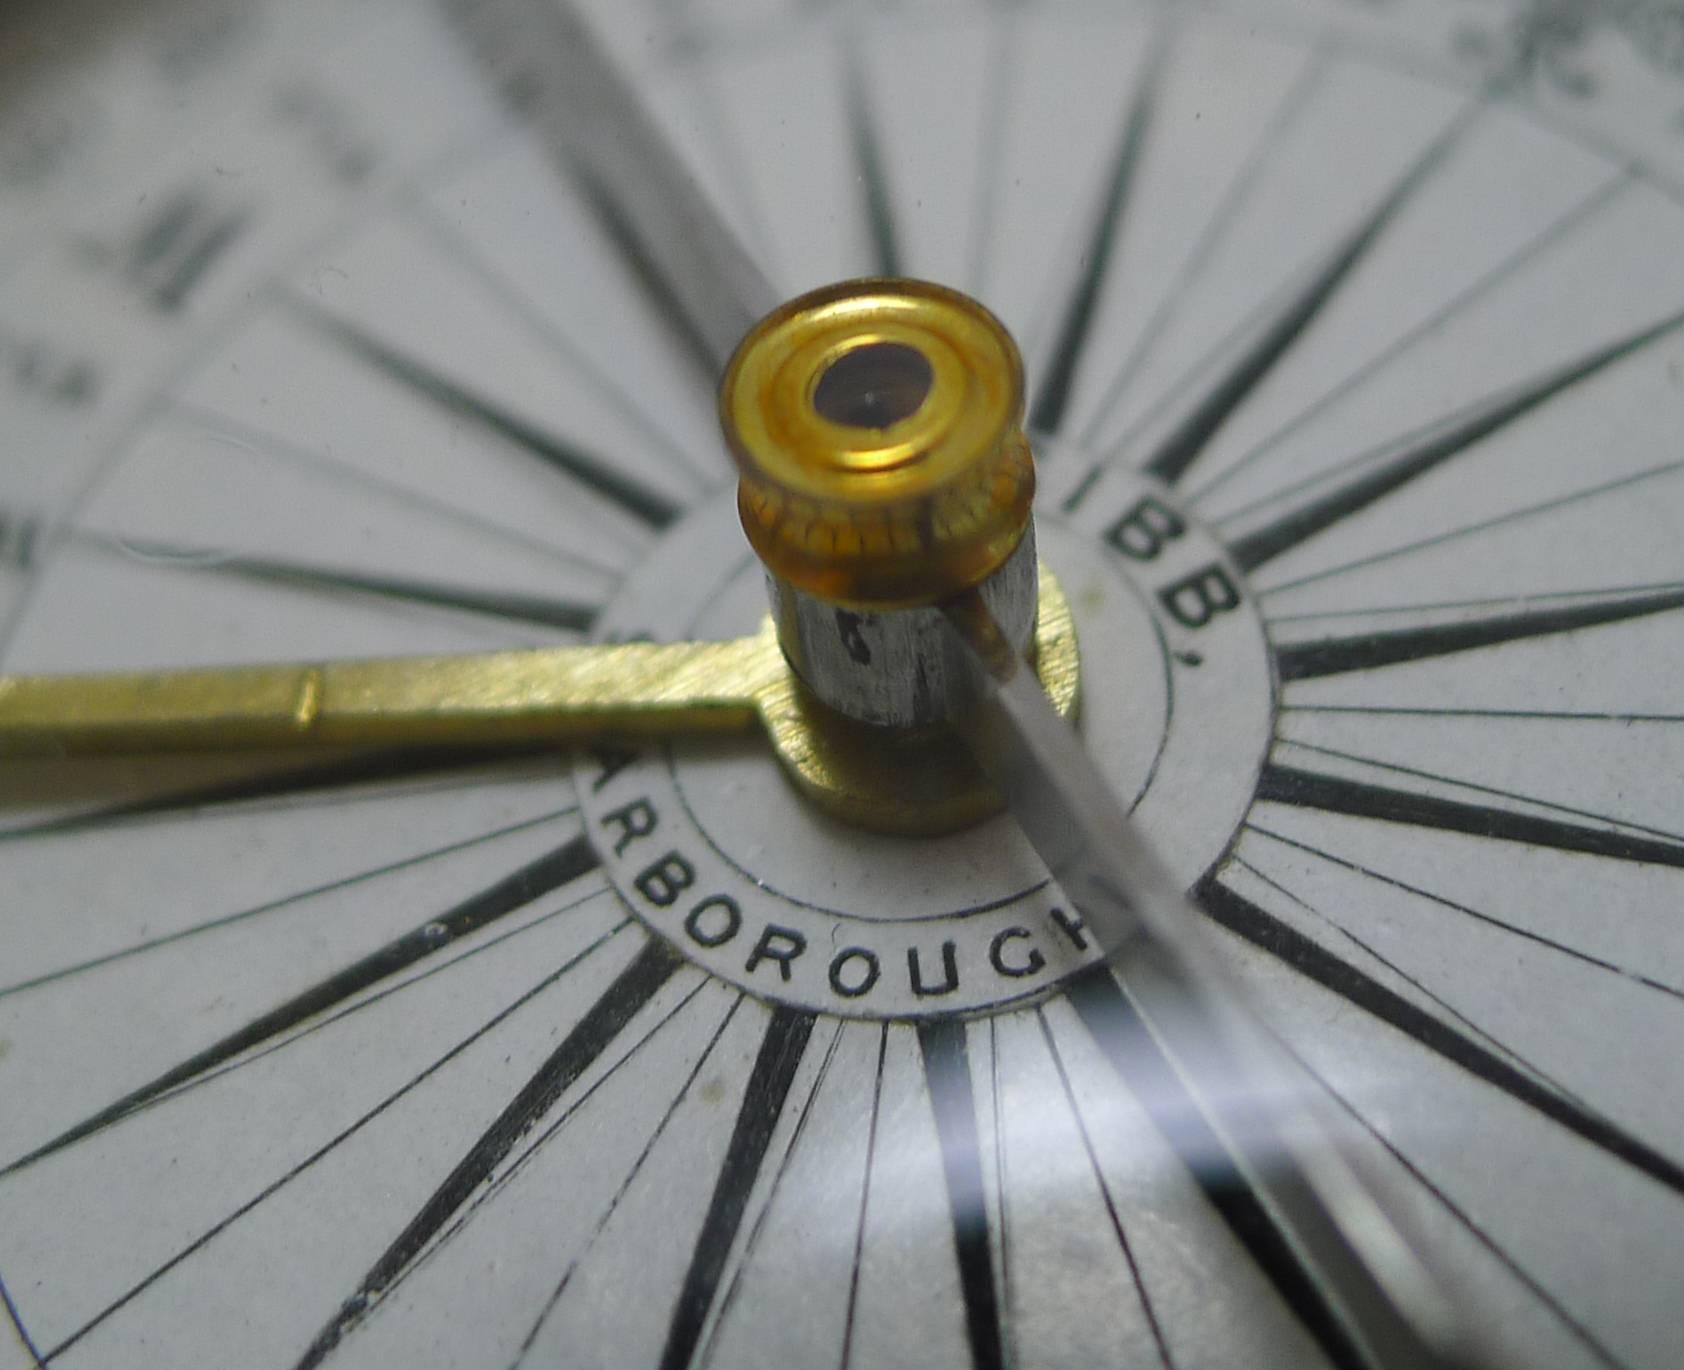 British Antique English Signed Explorer Compass, circa 1880